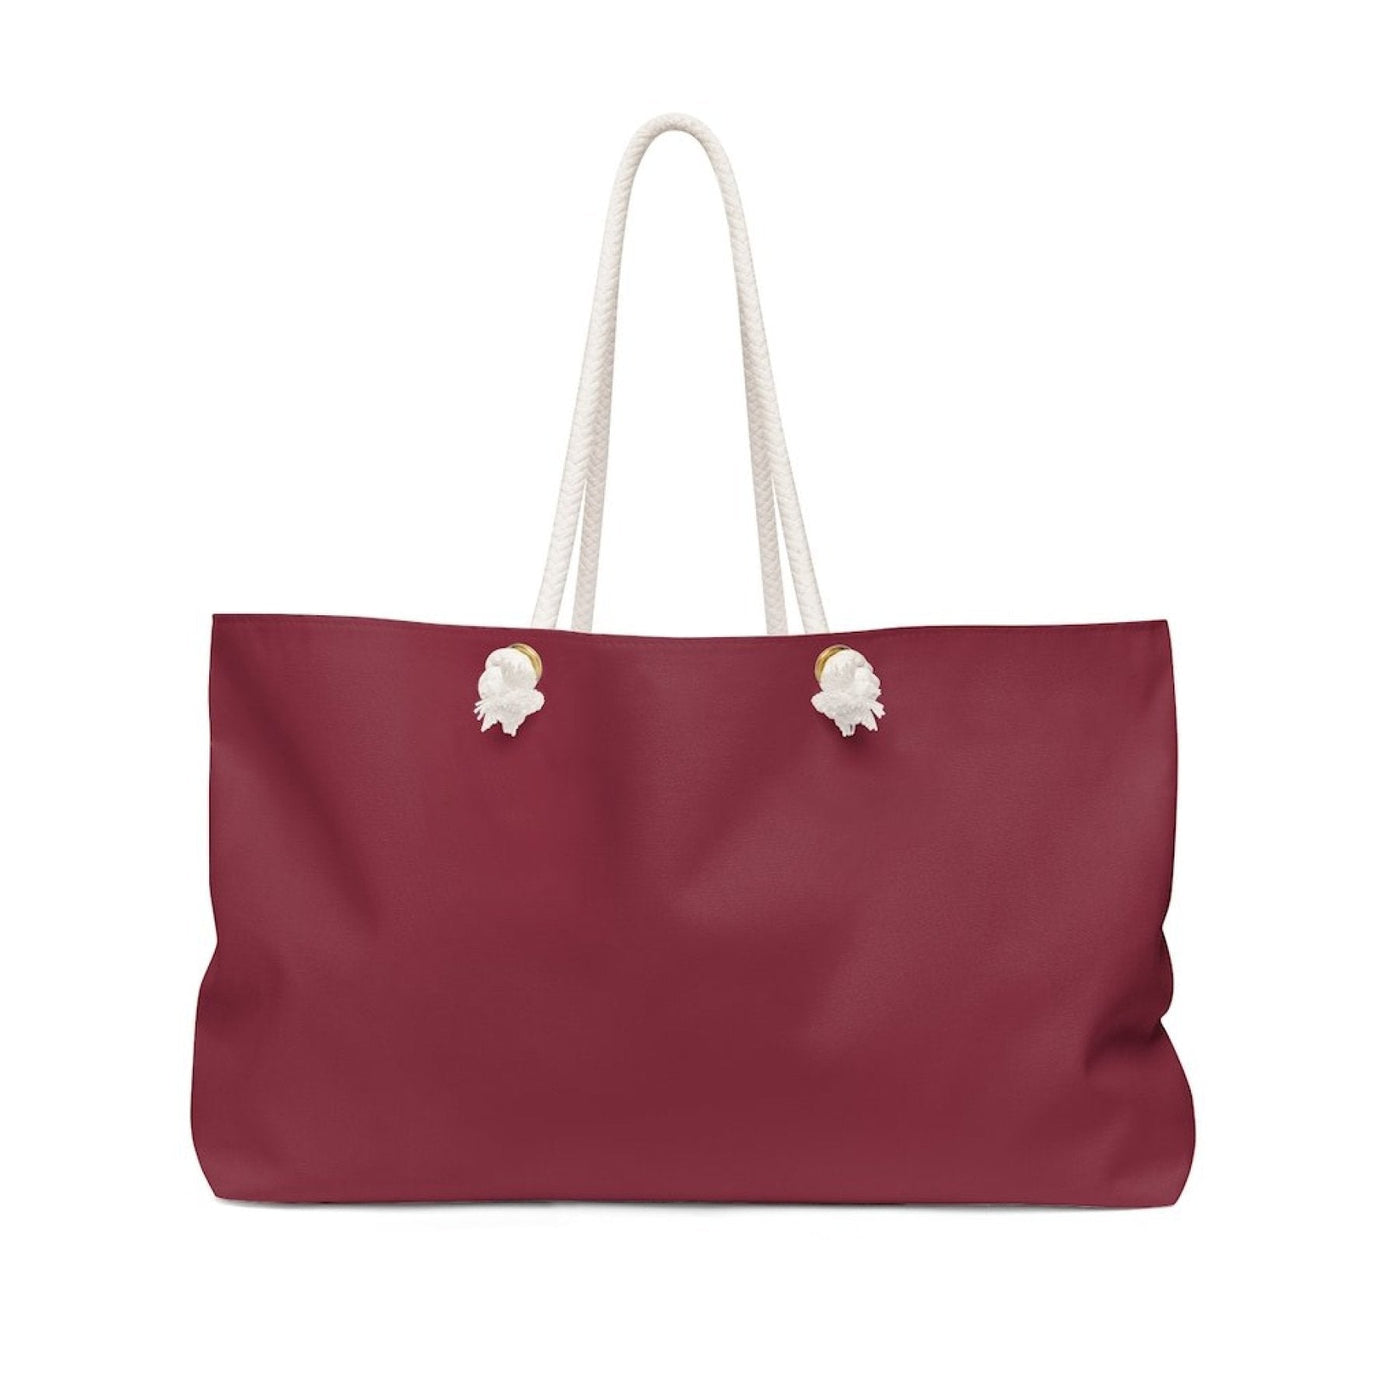 Weekender Tote Bag Maroon Red - Bags | Tote Bags | Weekender